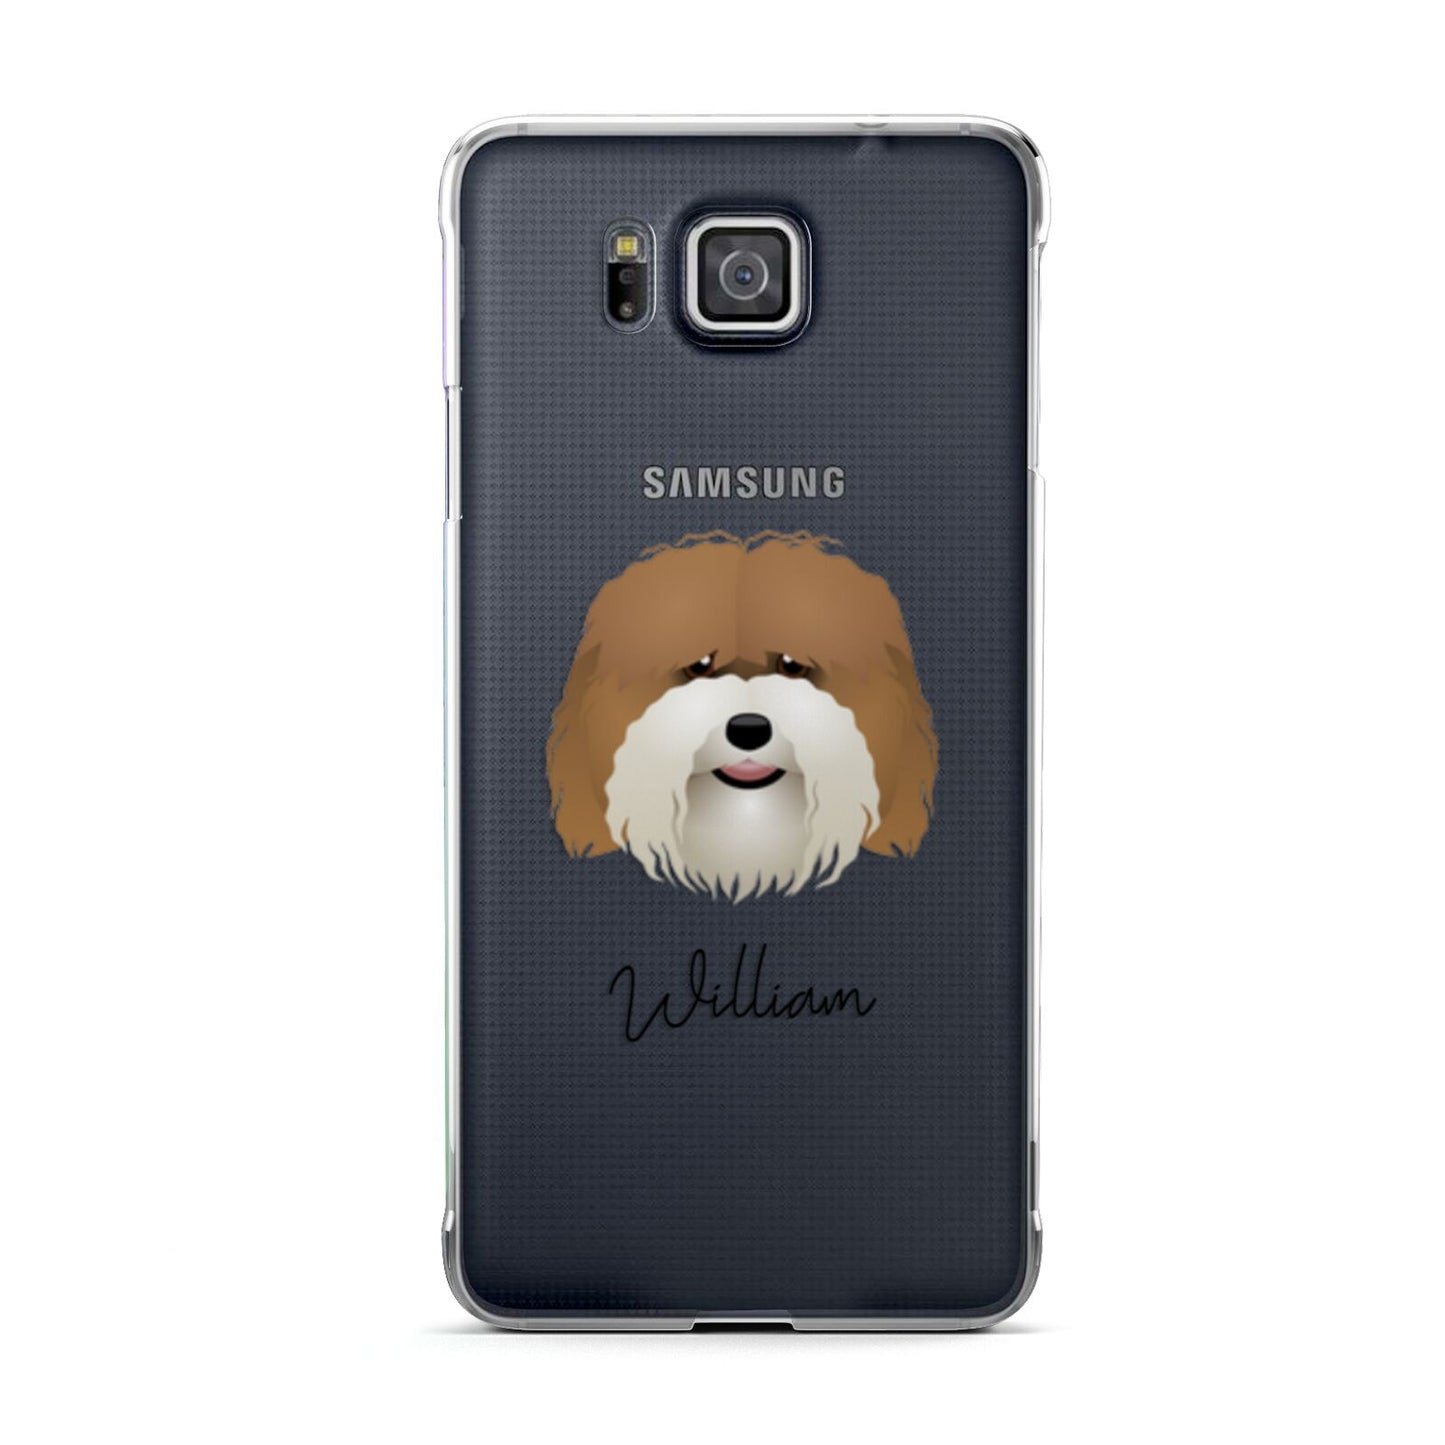 Coton De Tulear Personalised Samsung Galaxy Alpha Case